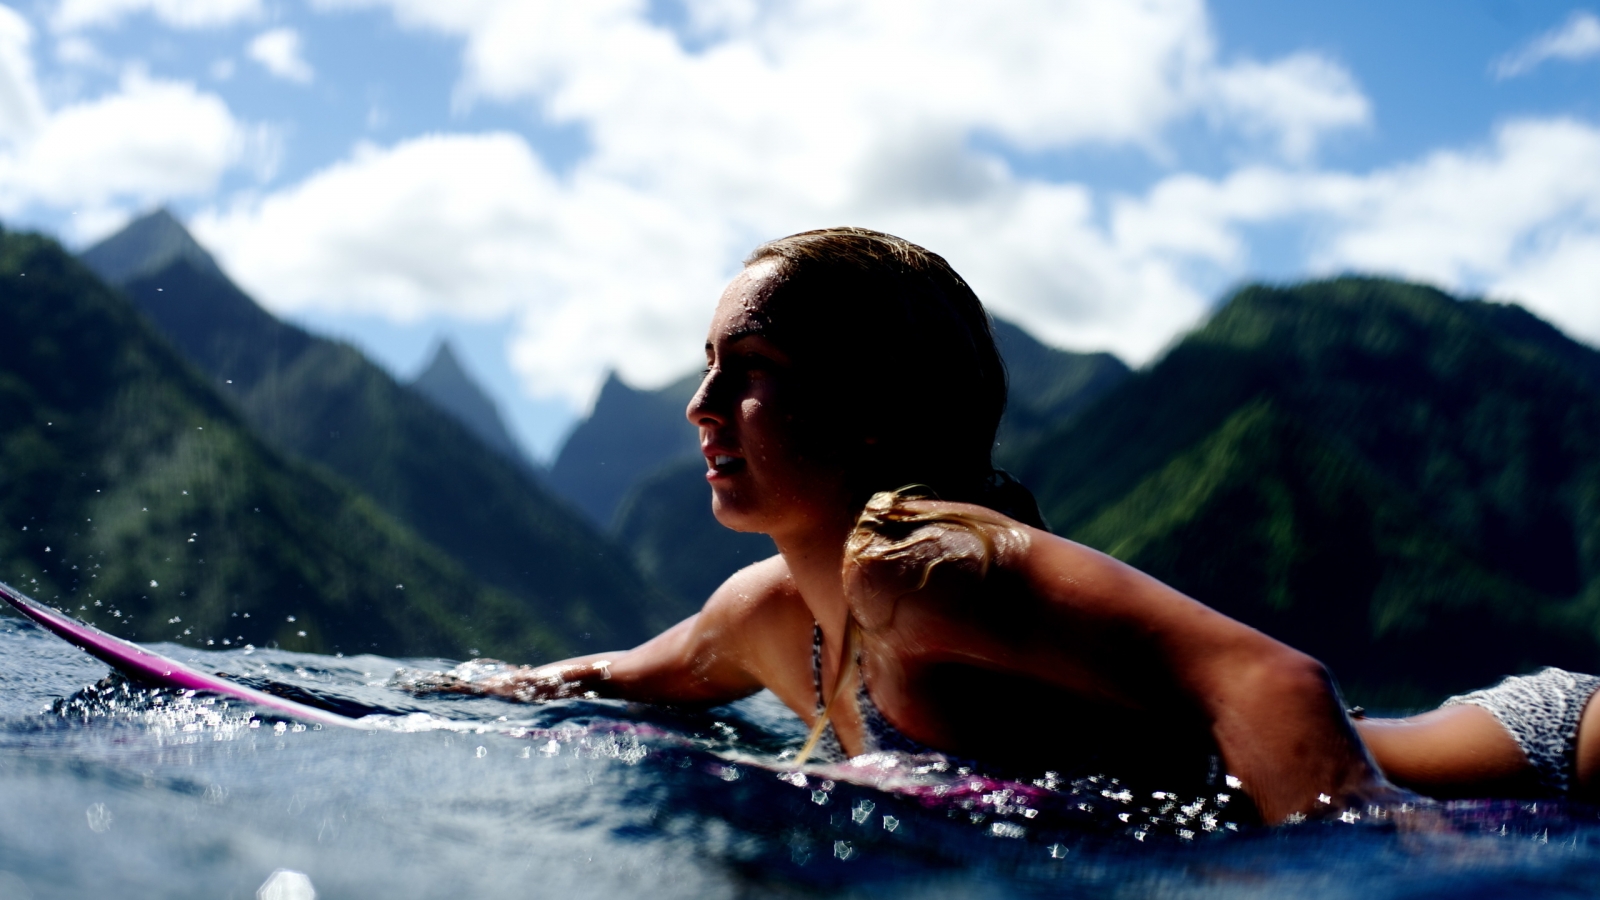 Surf Girl for 1600 x 900 HDTV resolution